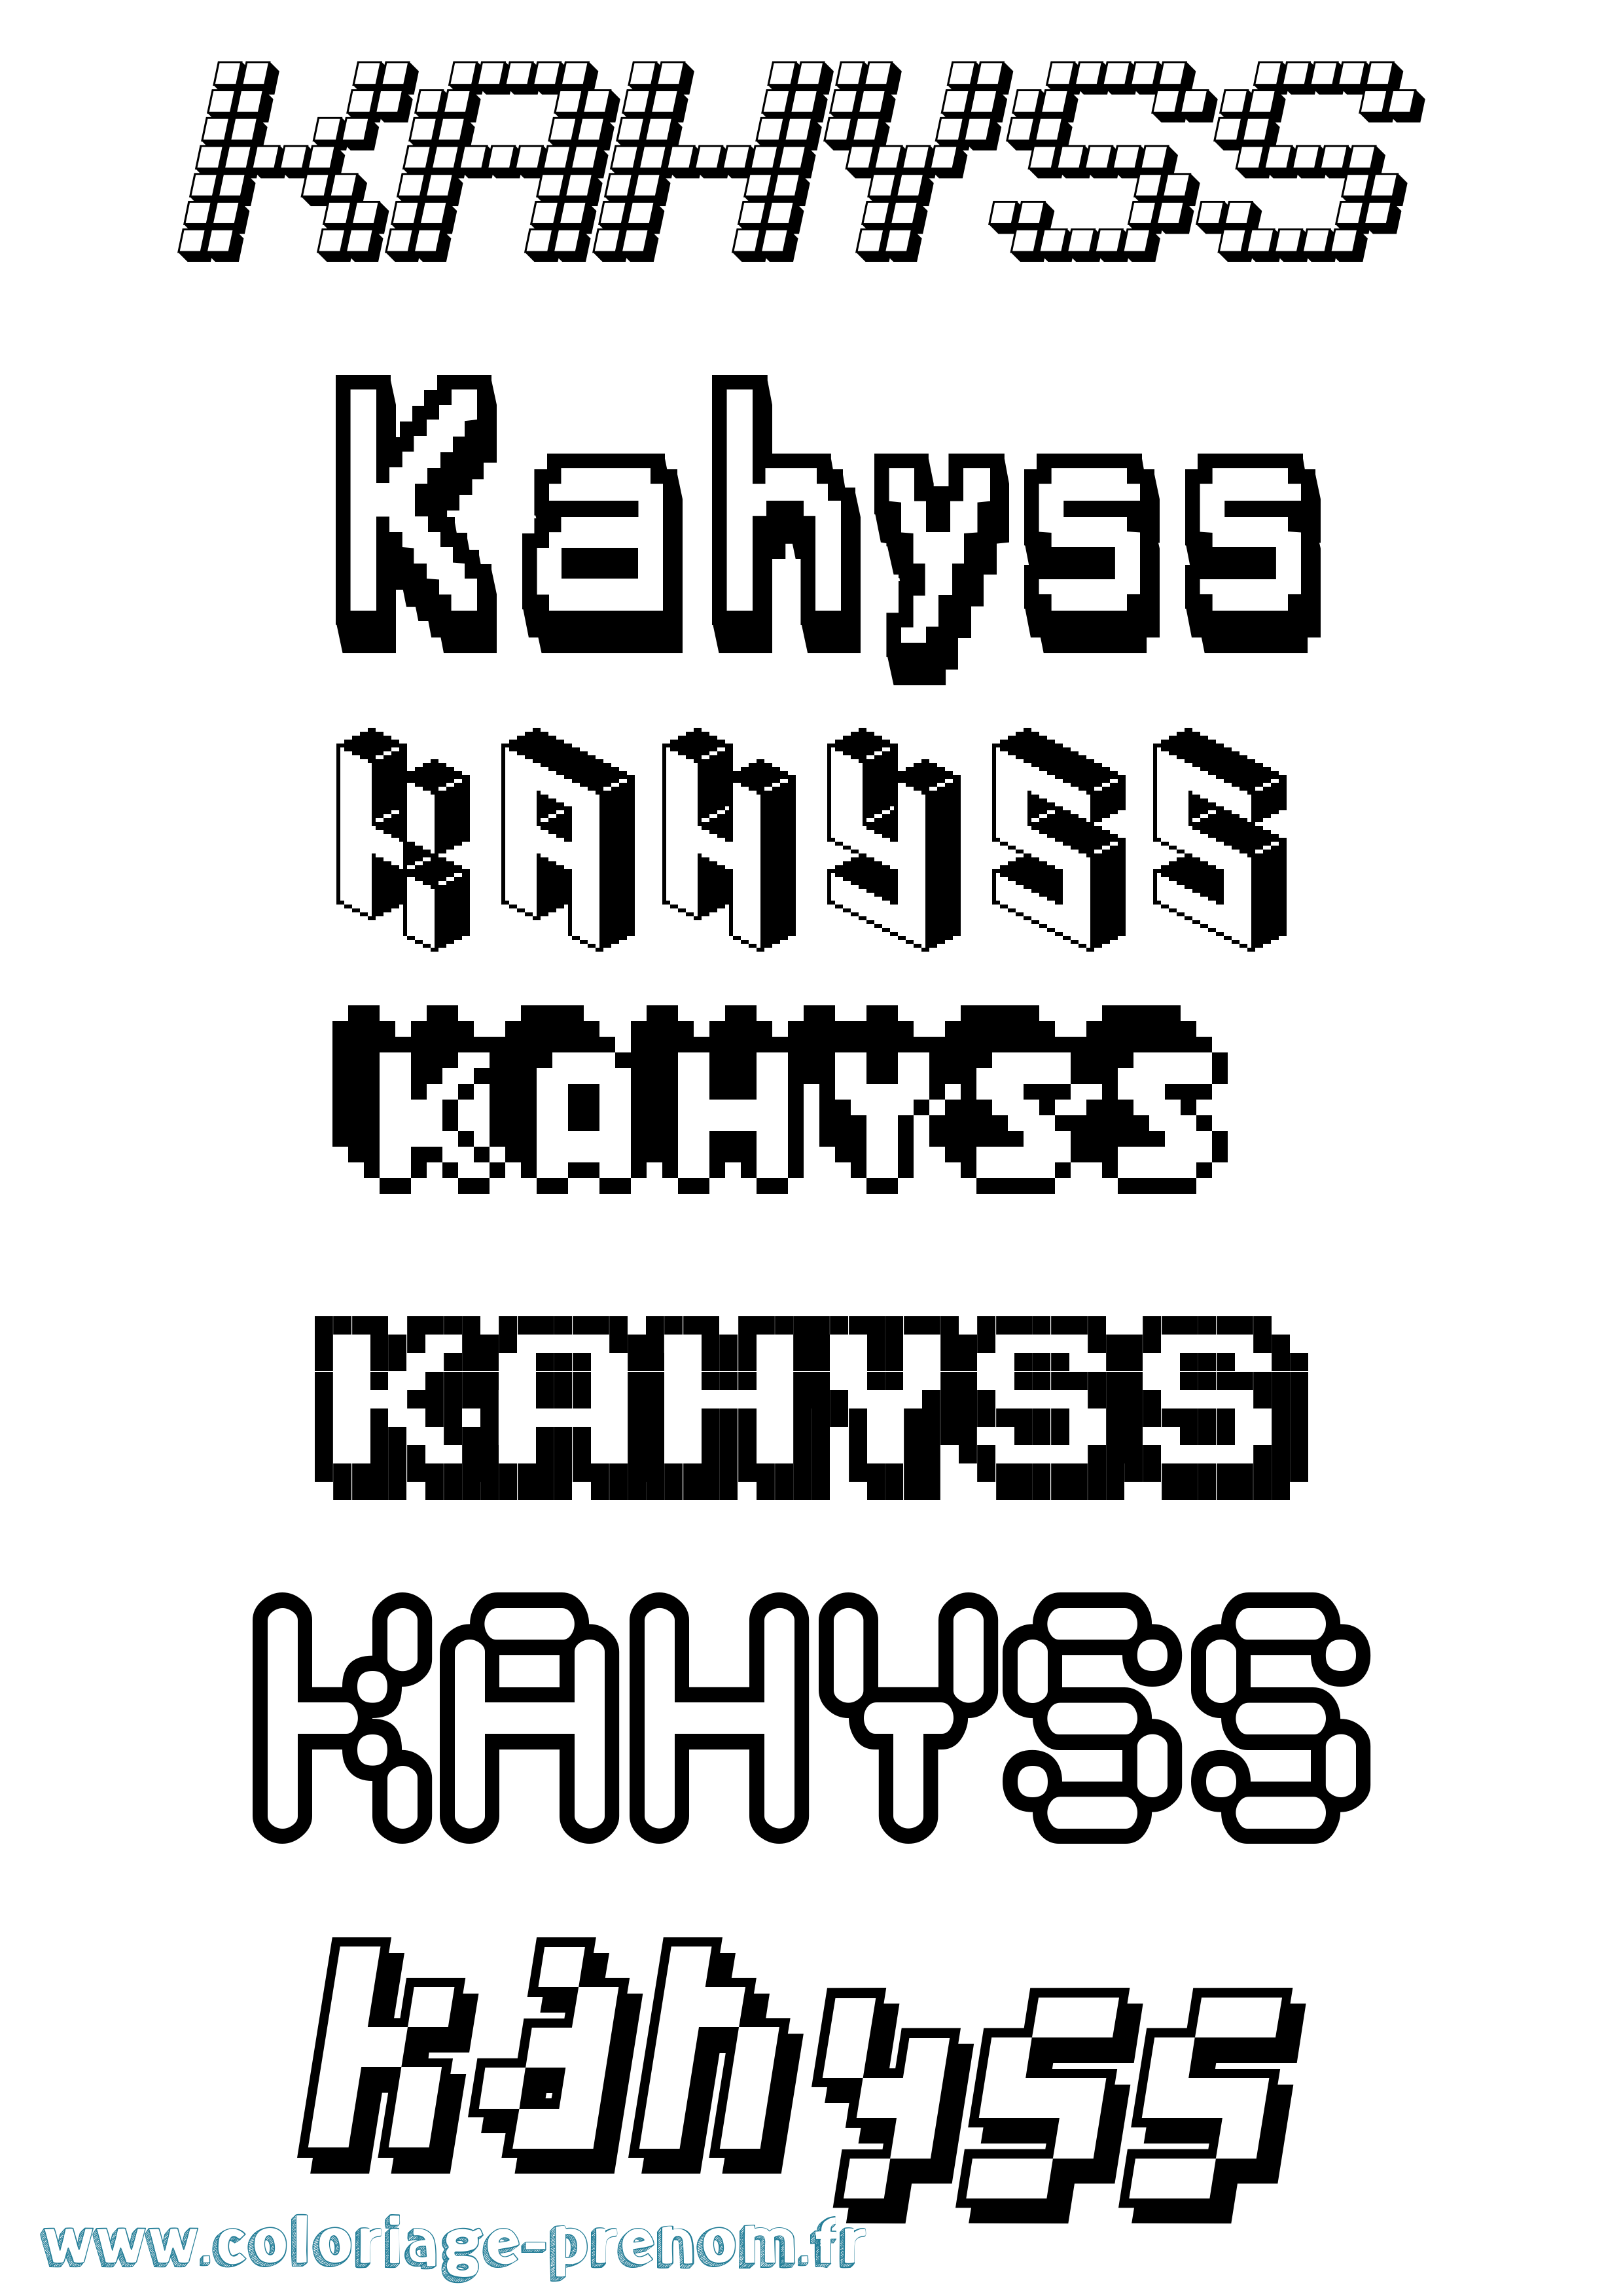 Coloriage prénom Kahyss Pixel